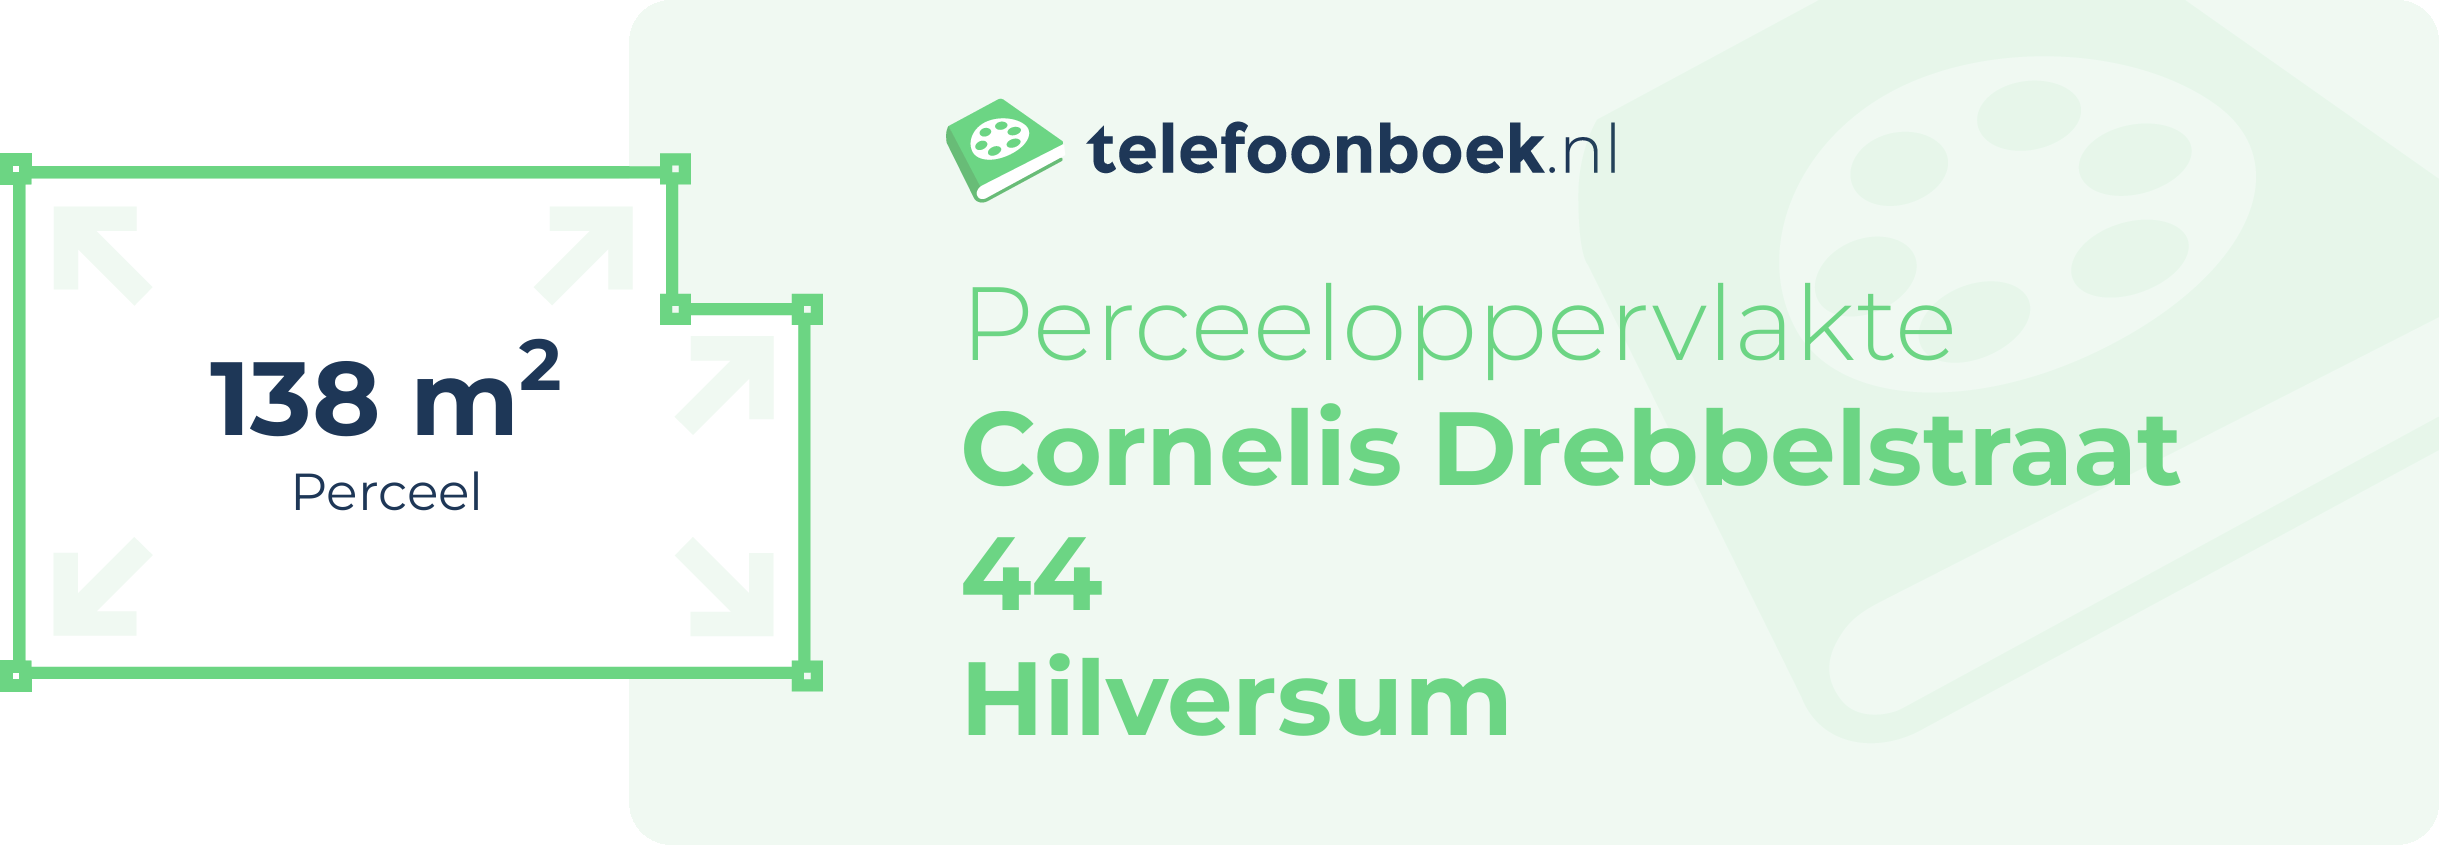 Perceeloppervlakte Cornelis Drebbelstraat 44 Hilversum